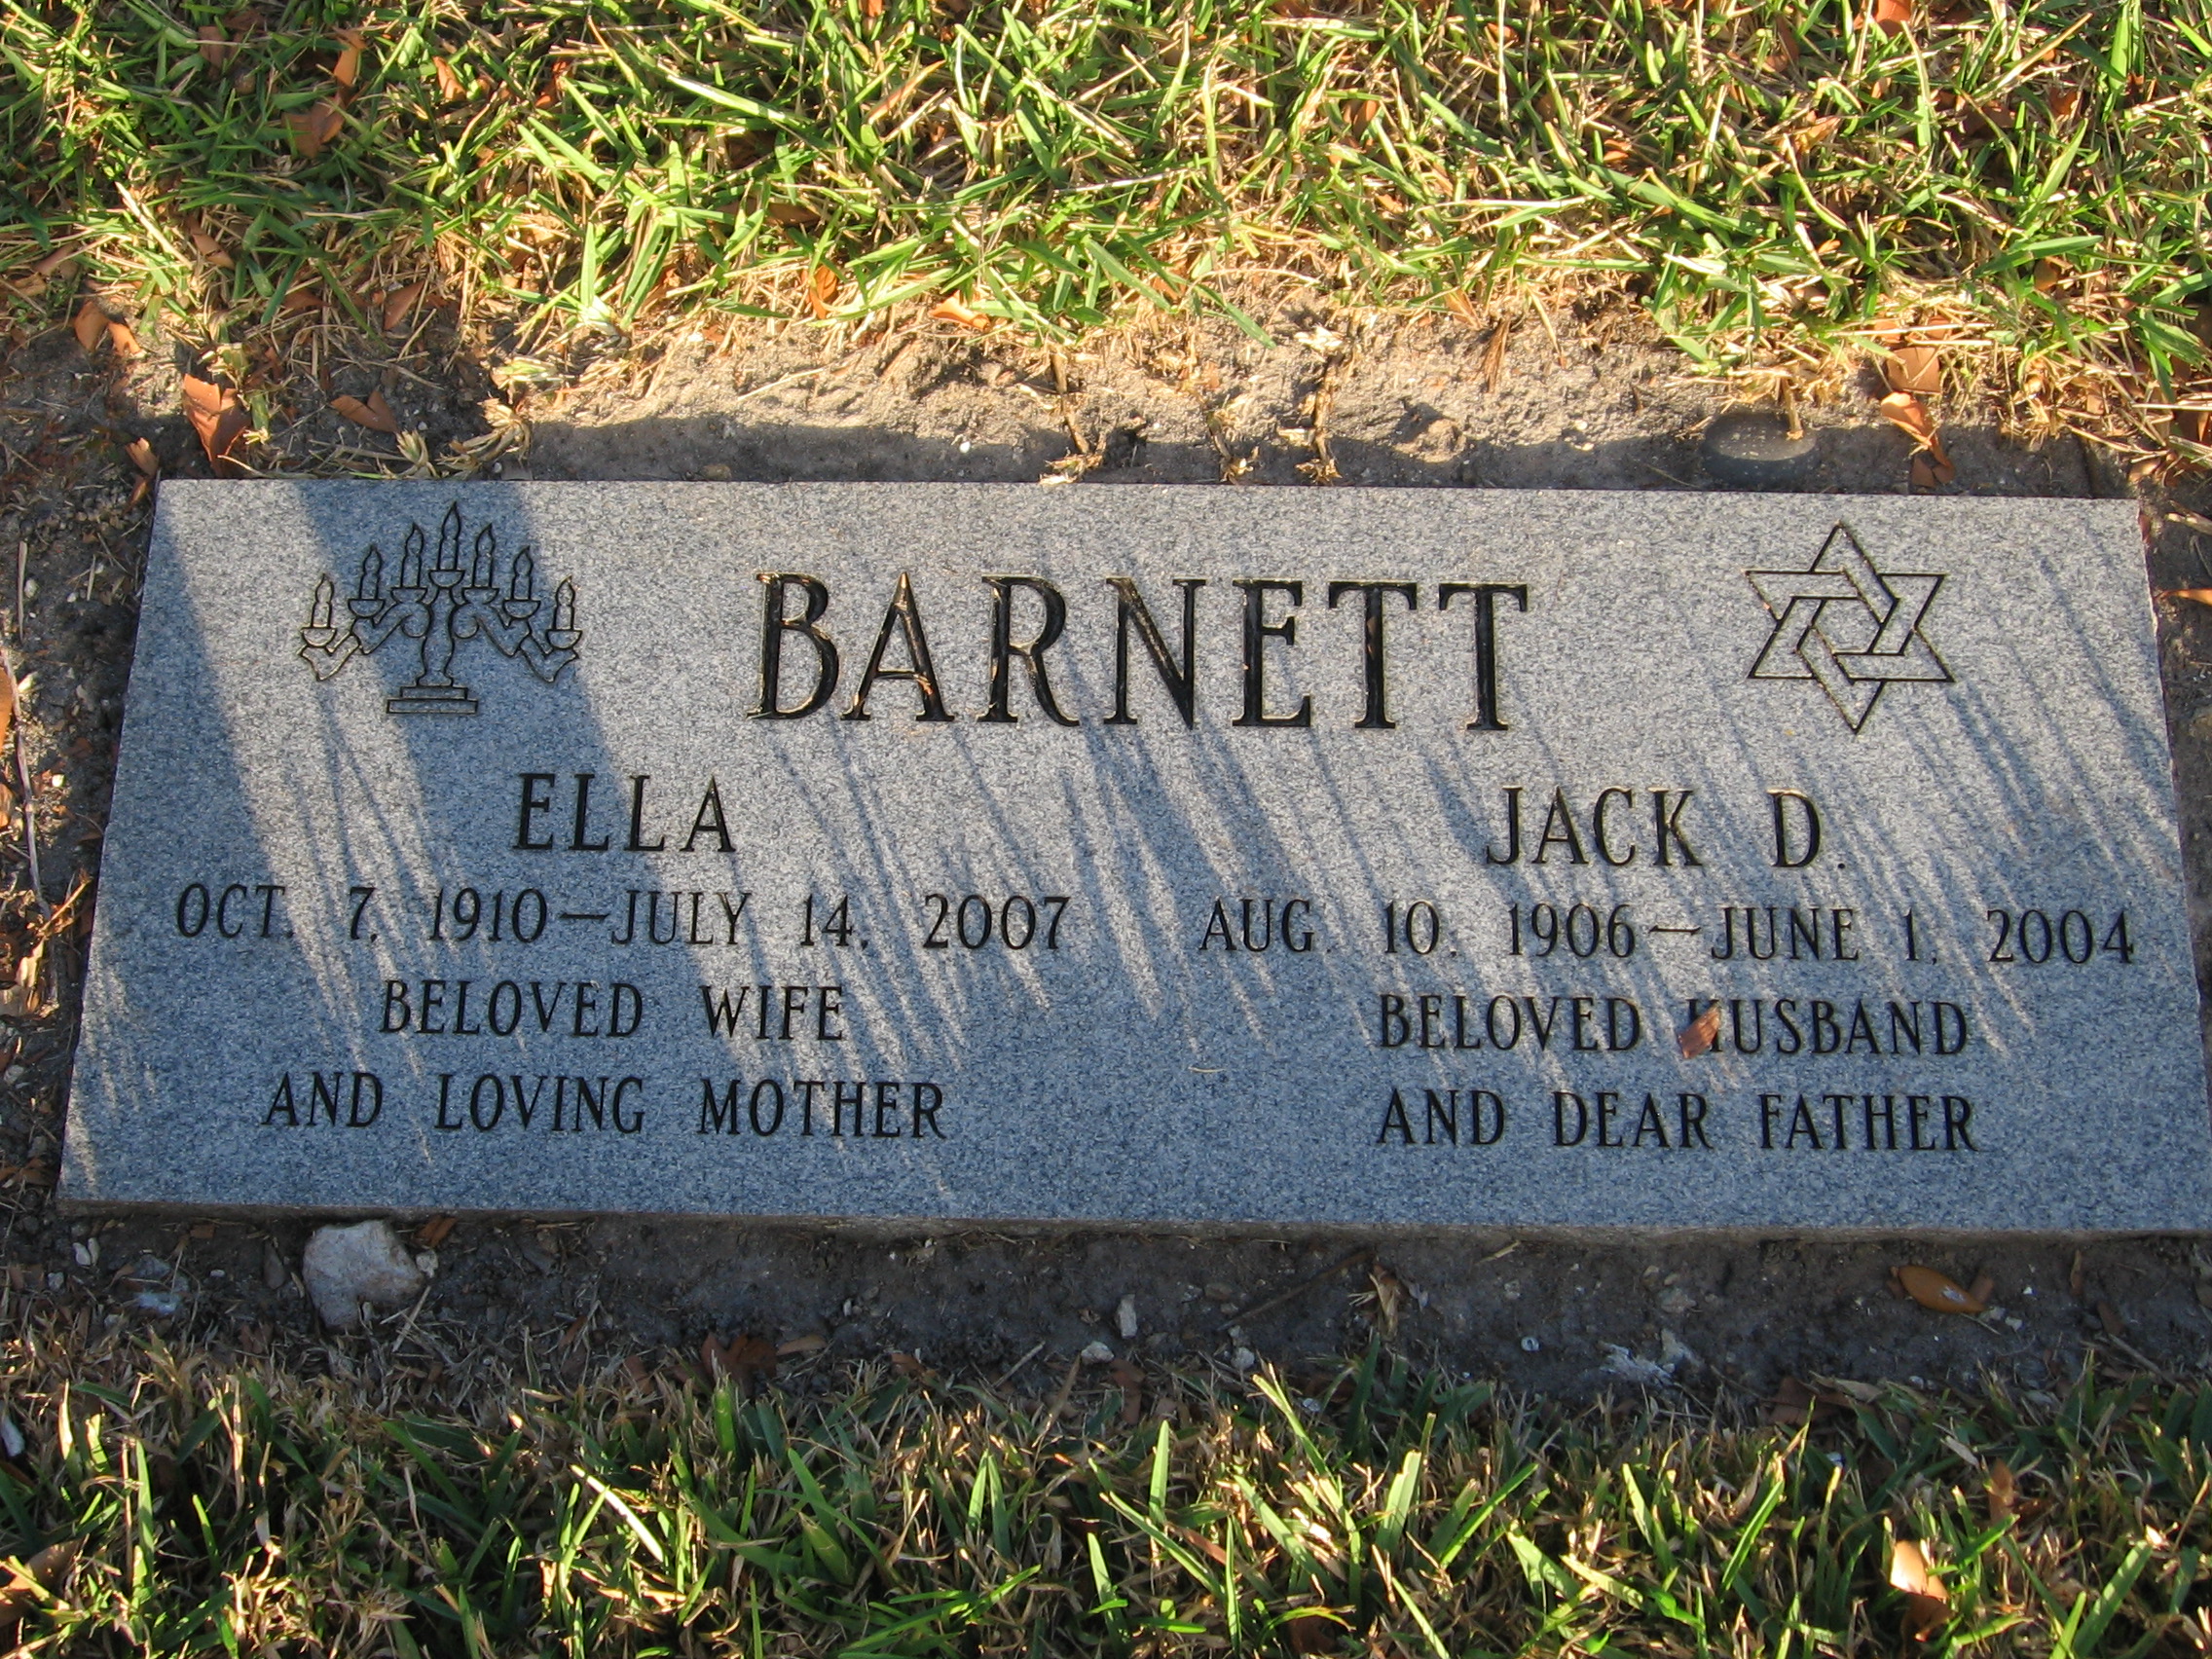 Jack D Barnett